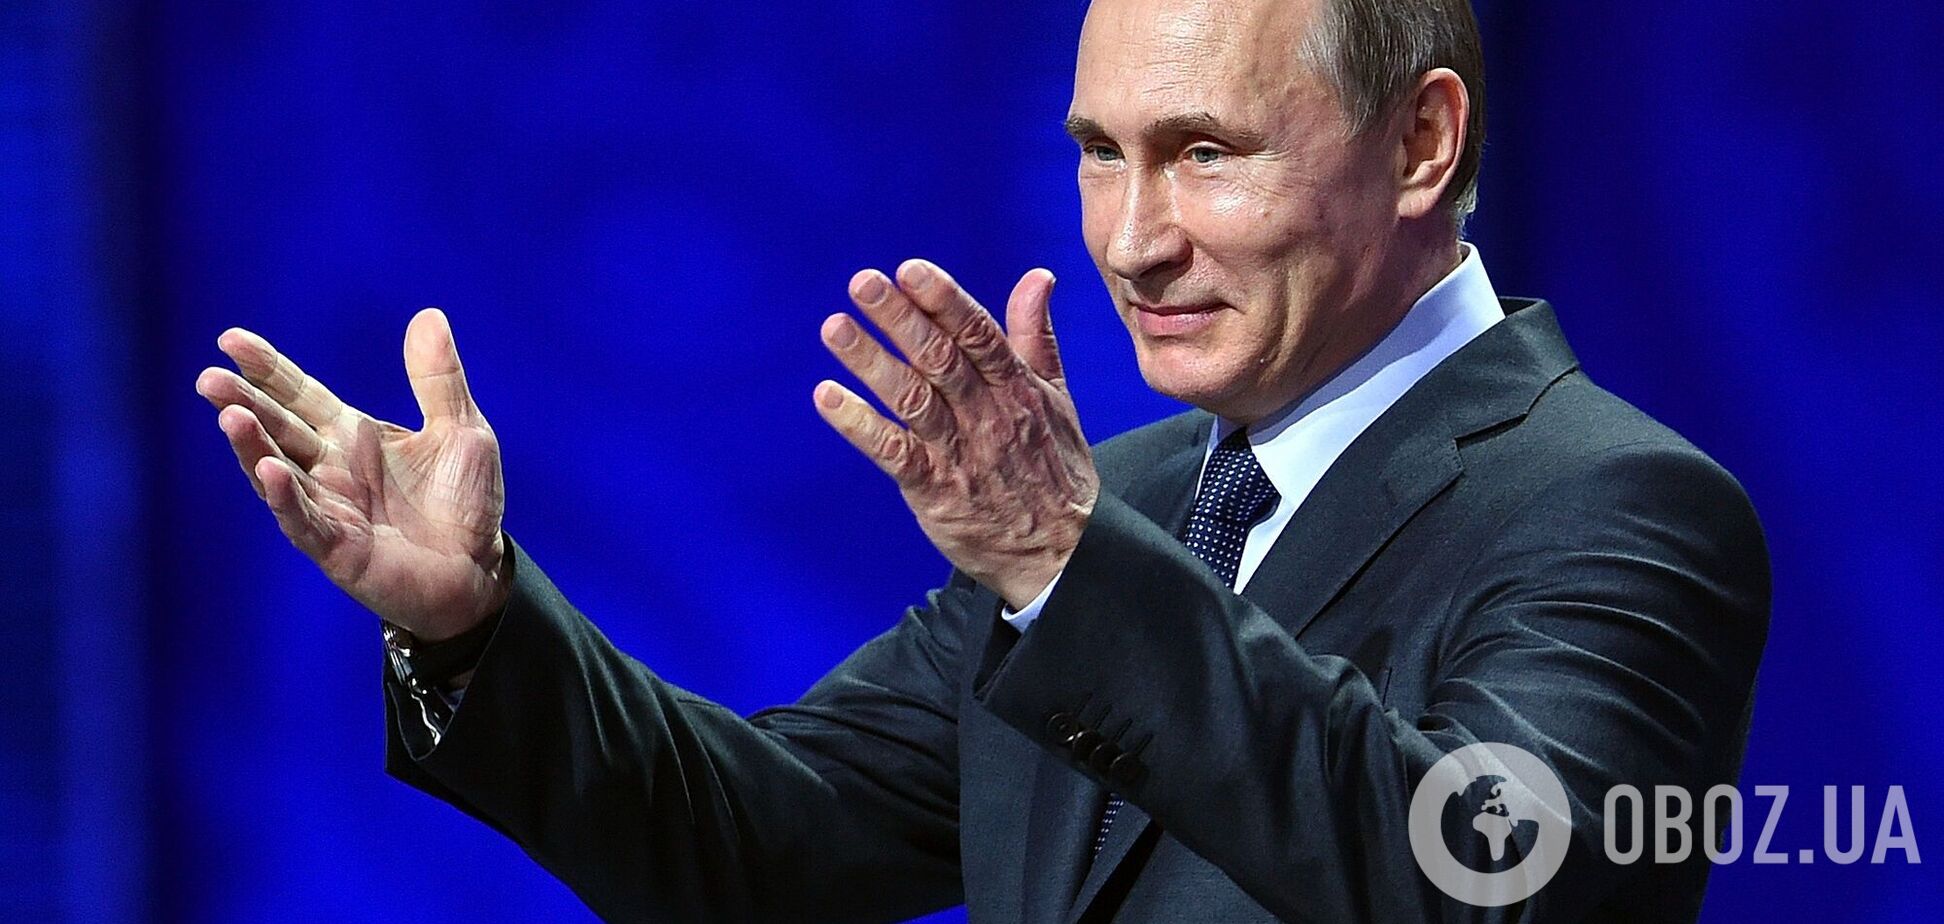 Новости Крымнаша. Как быстро стать абсолютно бесправным: маши триколором и ори 'Путин, введи!'